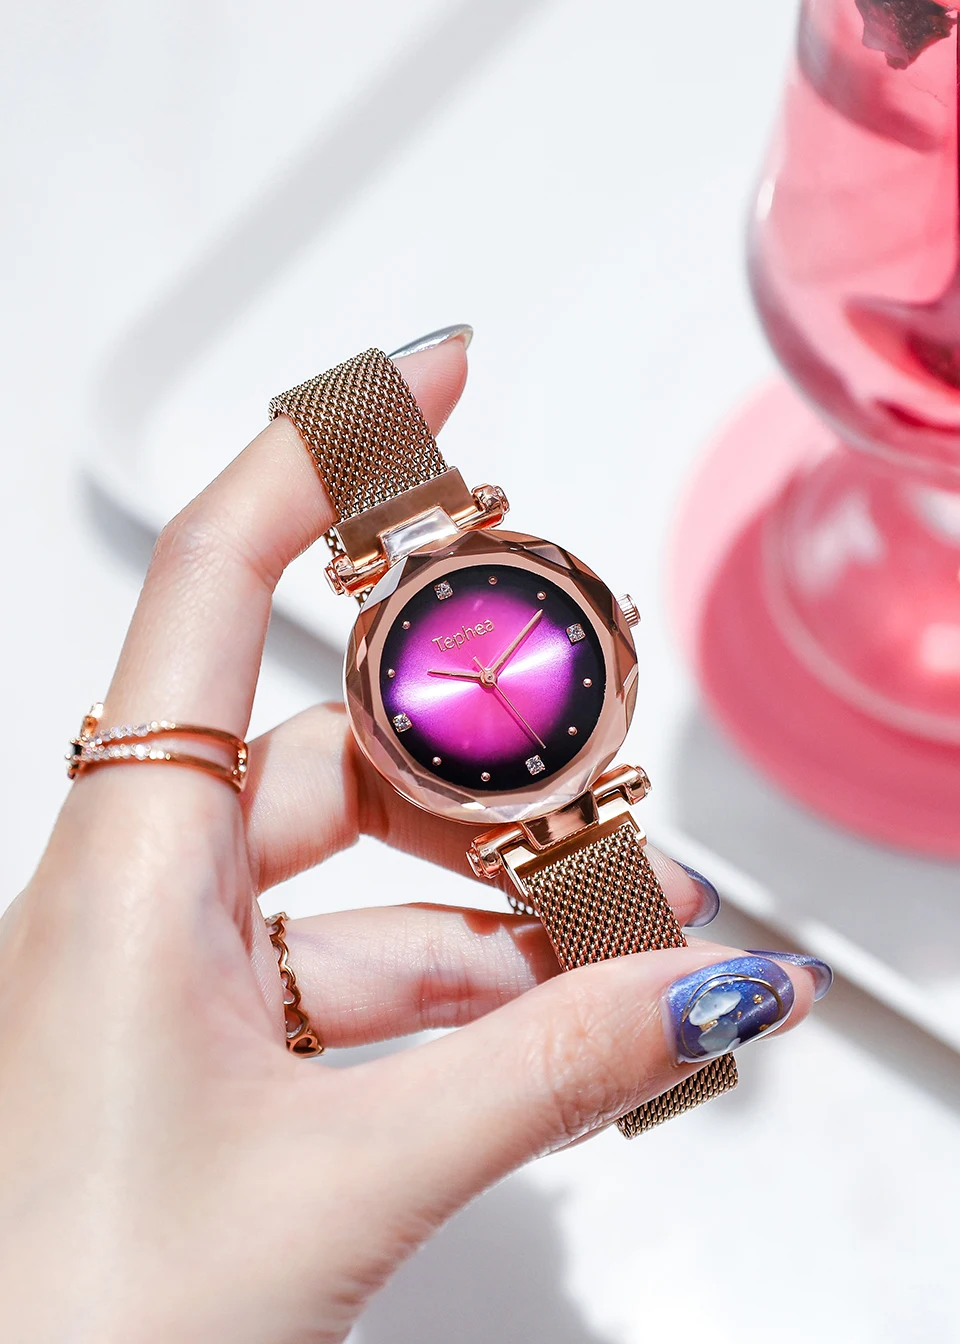 2019 роскошные розовое золото женские часы мода Diamond звездное небо магнит для женщин часы водостойкие женские наручные для подарка